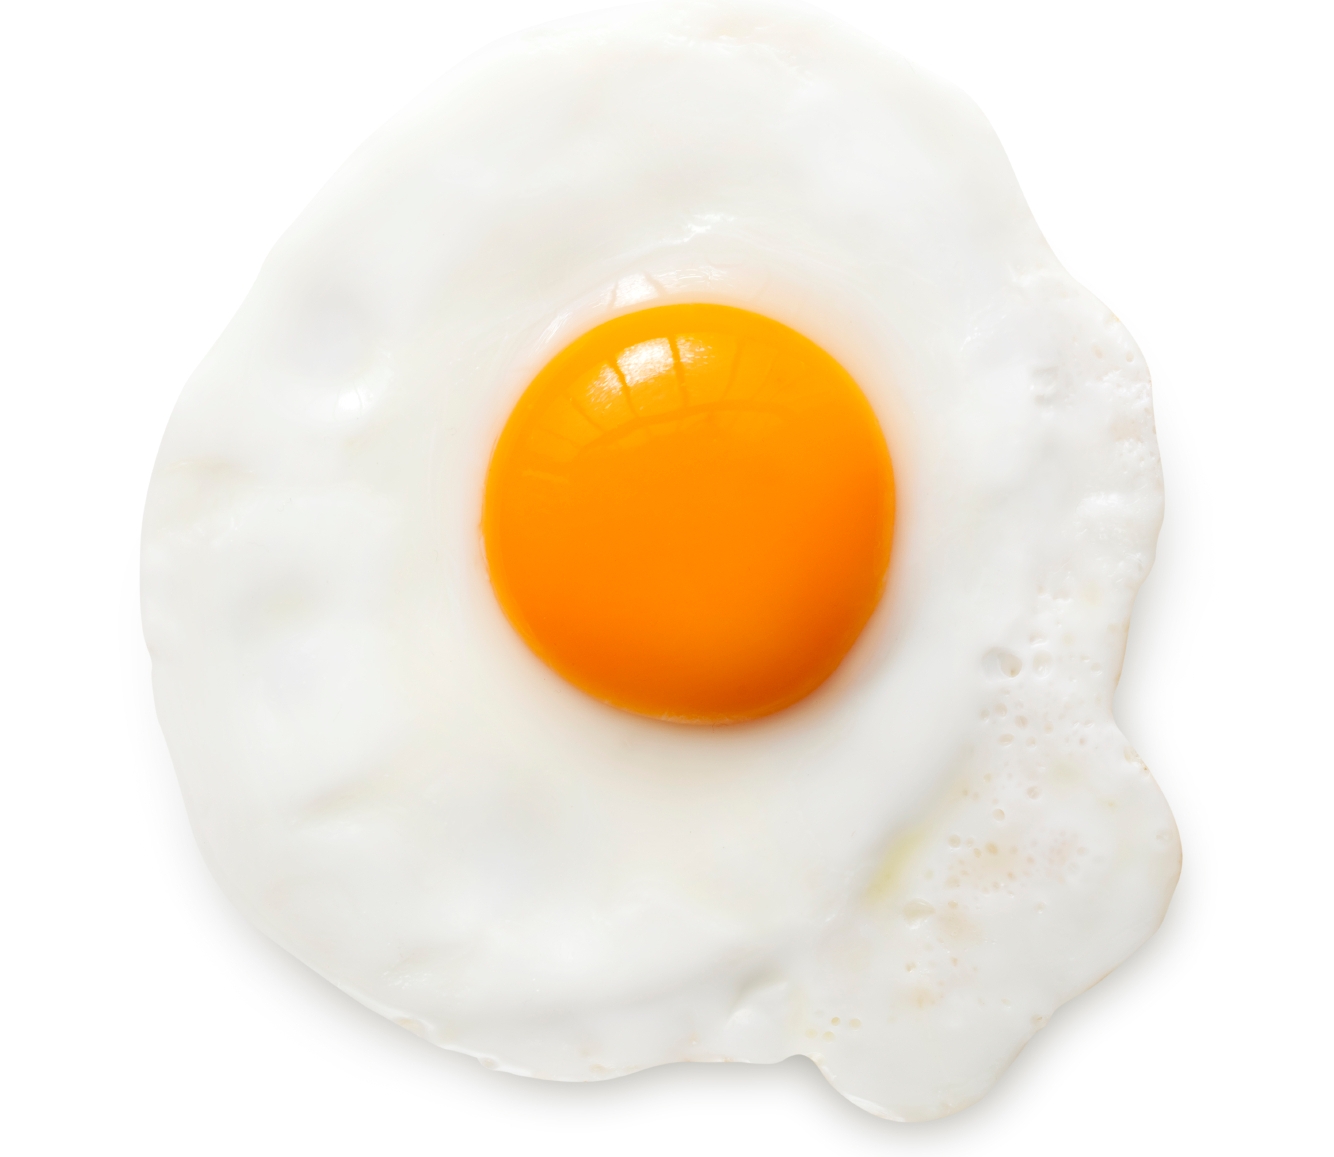 เหลือแล้วอย่าทิ้ง!! 8 ประโยชน์อันน่าทึ่งของไข่ขาว ที่แพรวพราวจนคุณนึกไม่ถึง!!